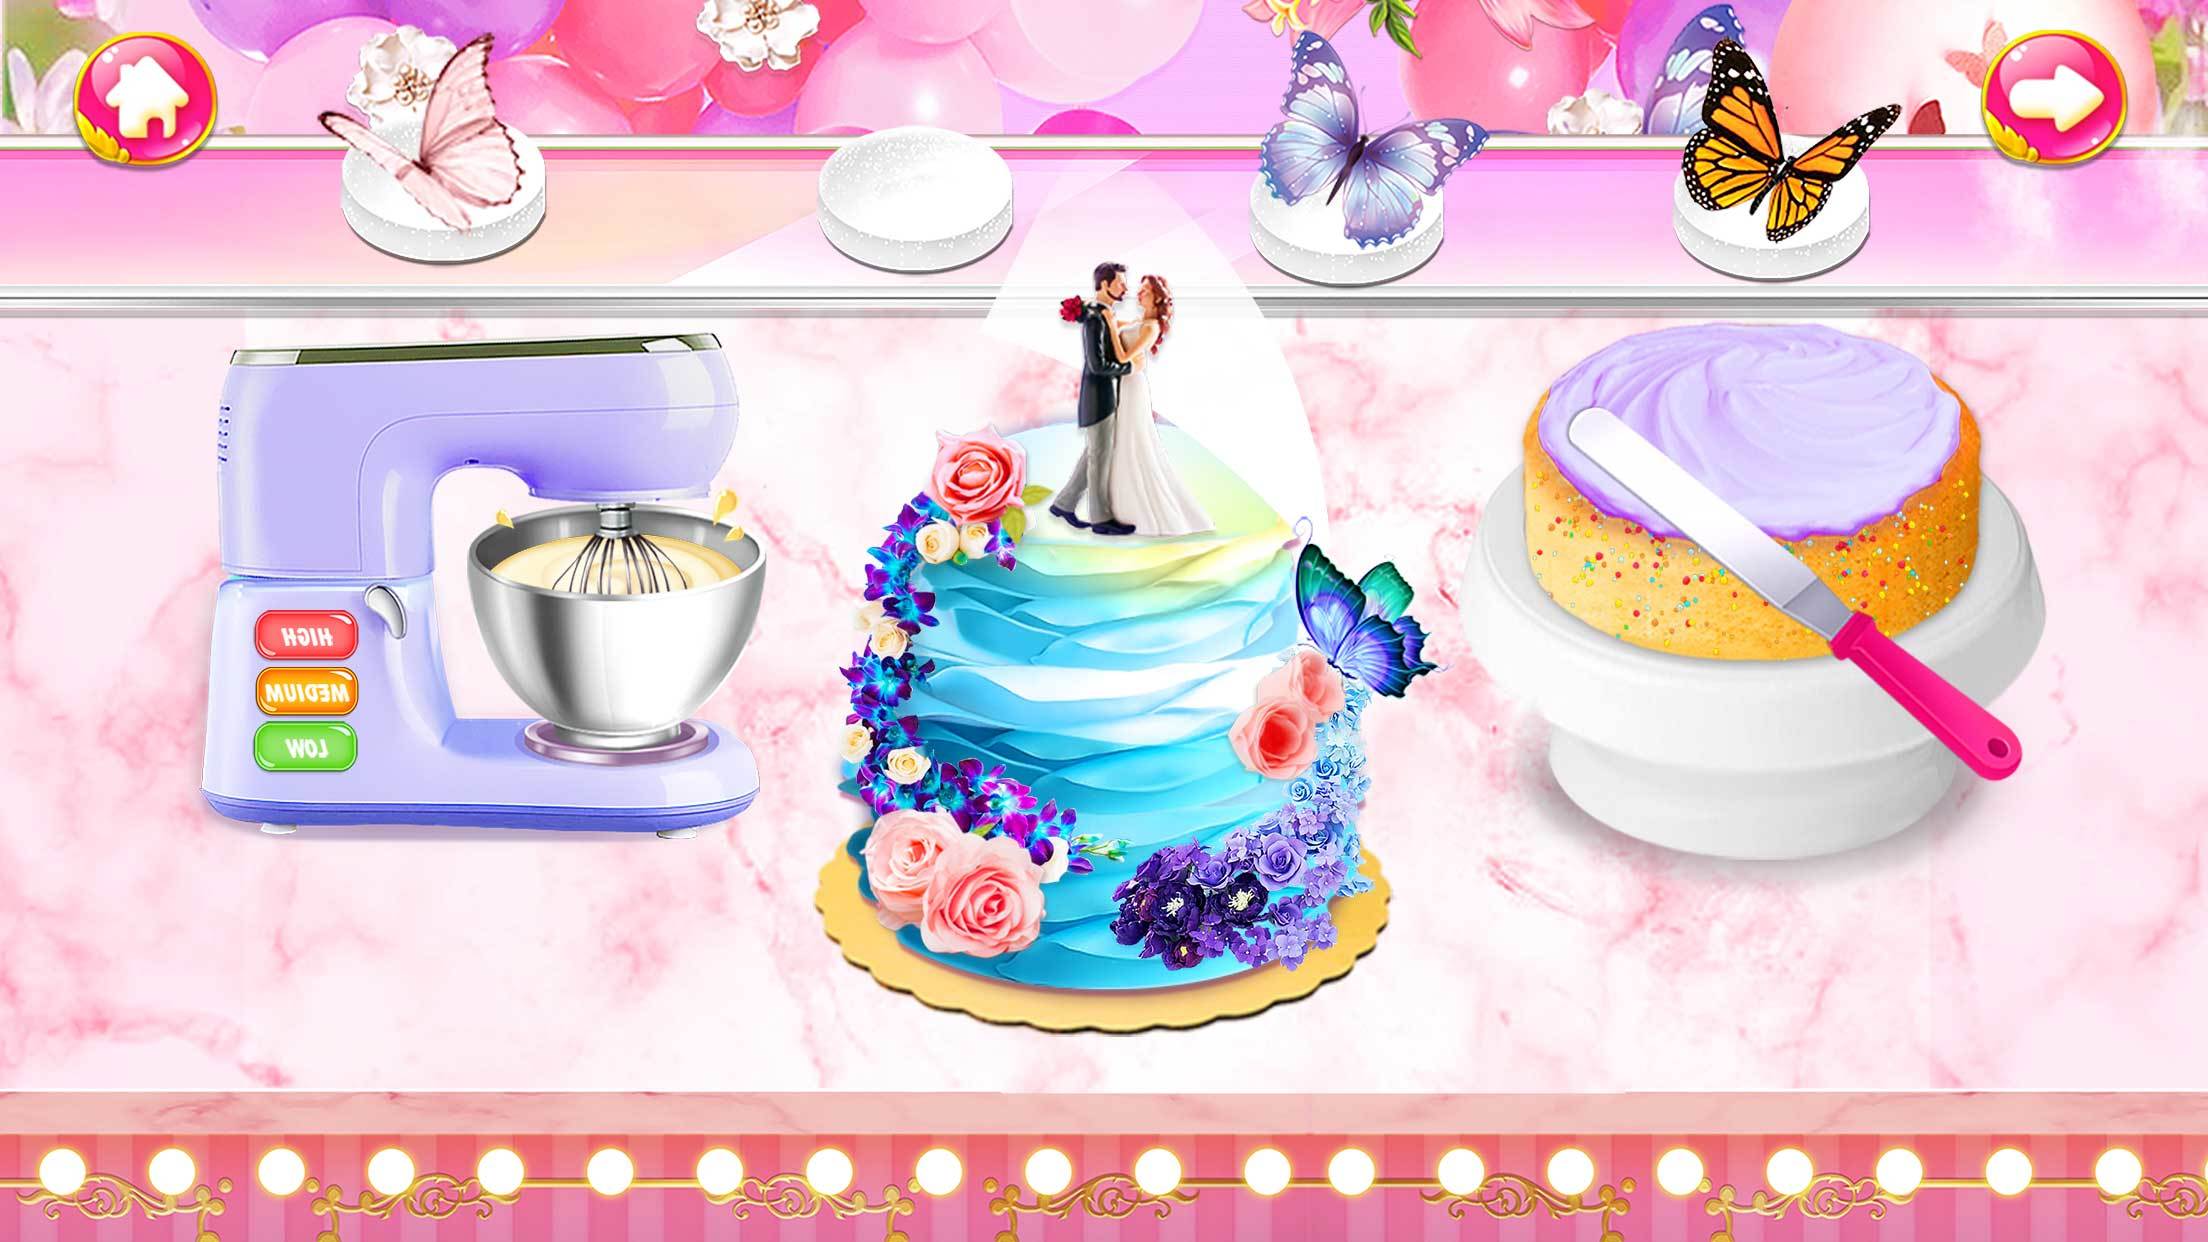 Screenshot 1 of 웨딩 케이크: 요리 게임 1.5